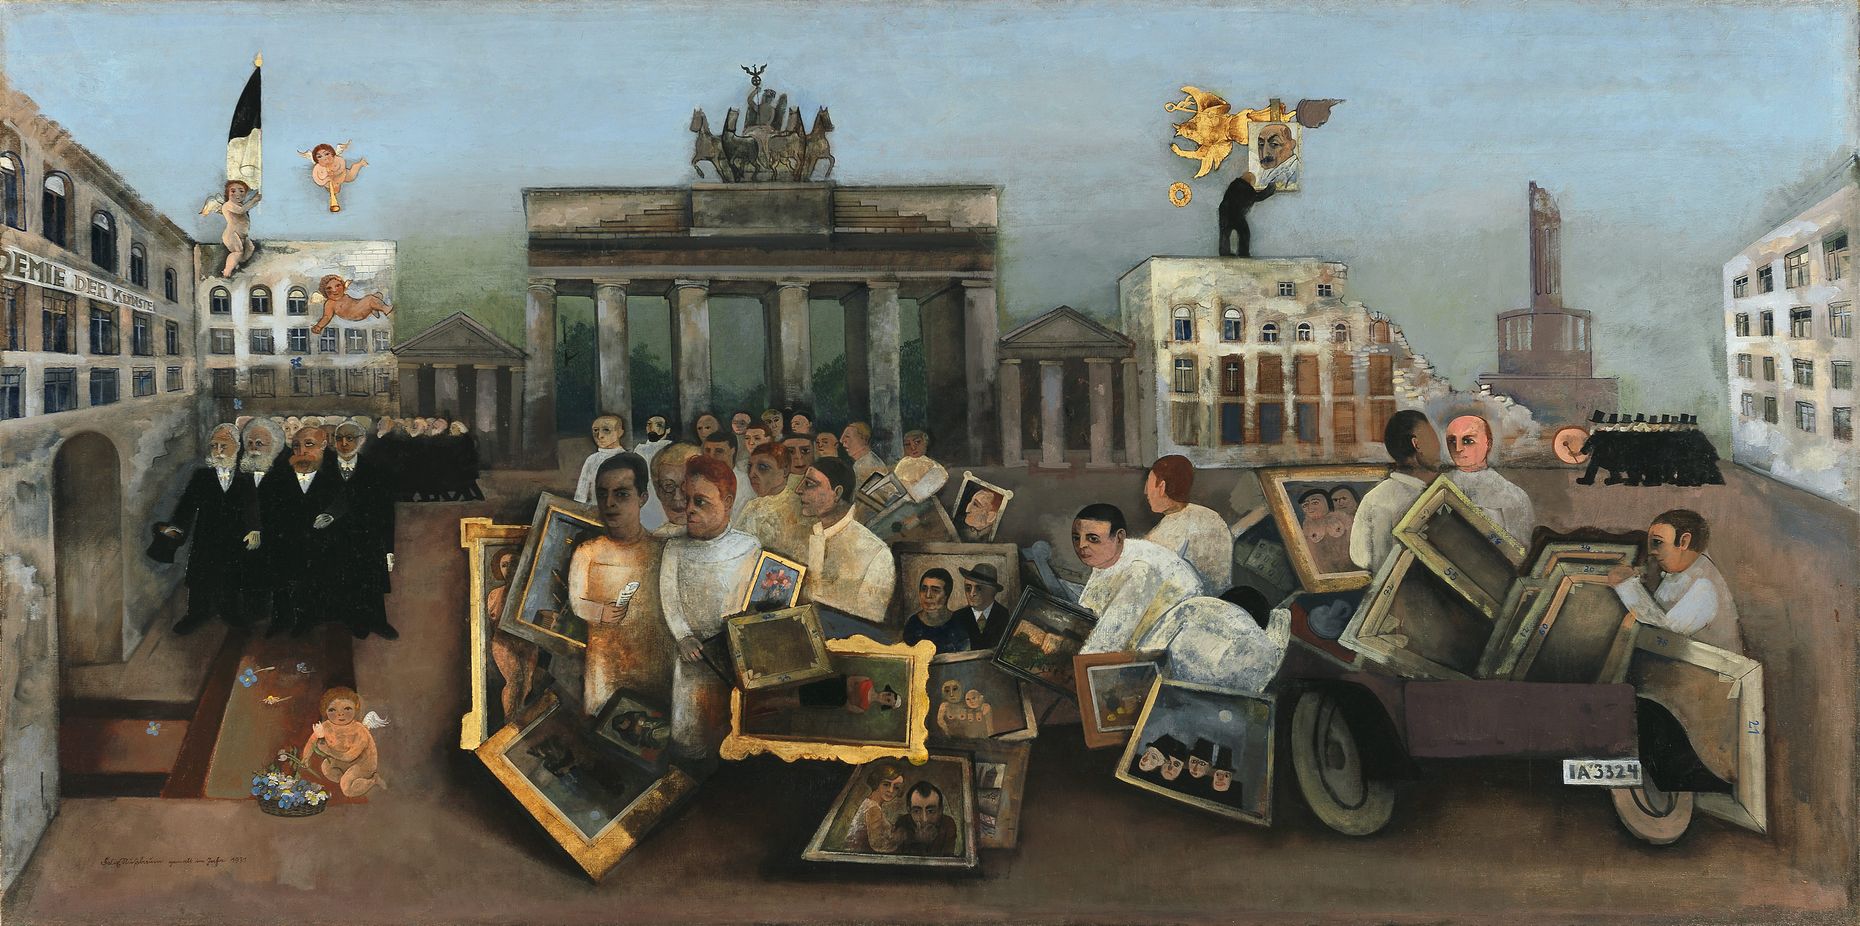 Gemälde von Felix Nussbaum, Öl auf Leinwand, 97 x 195,5 cm